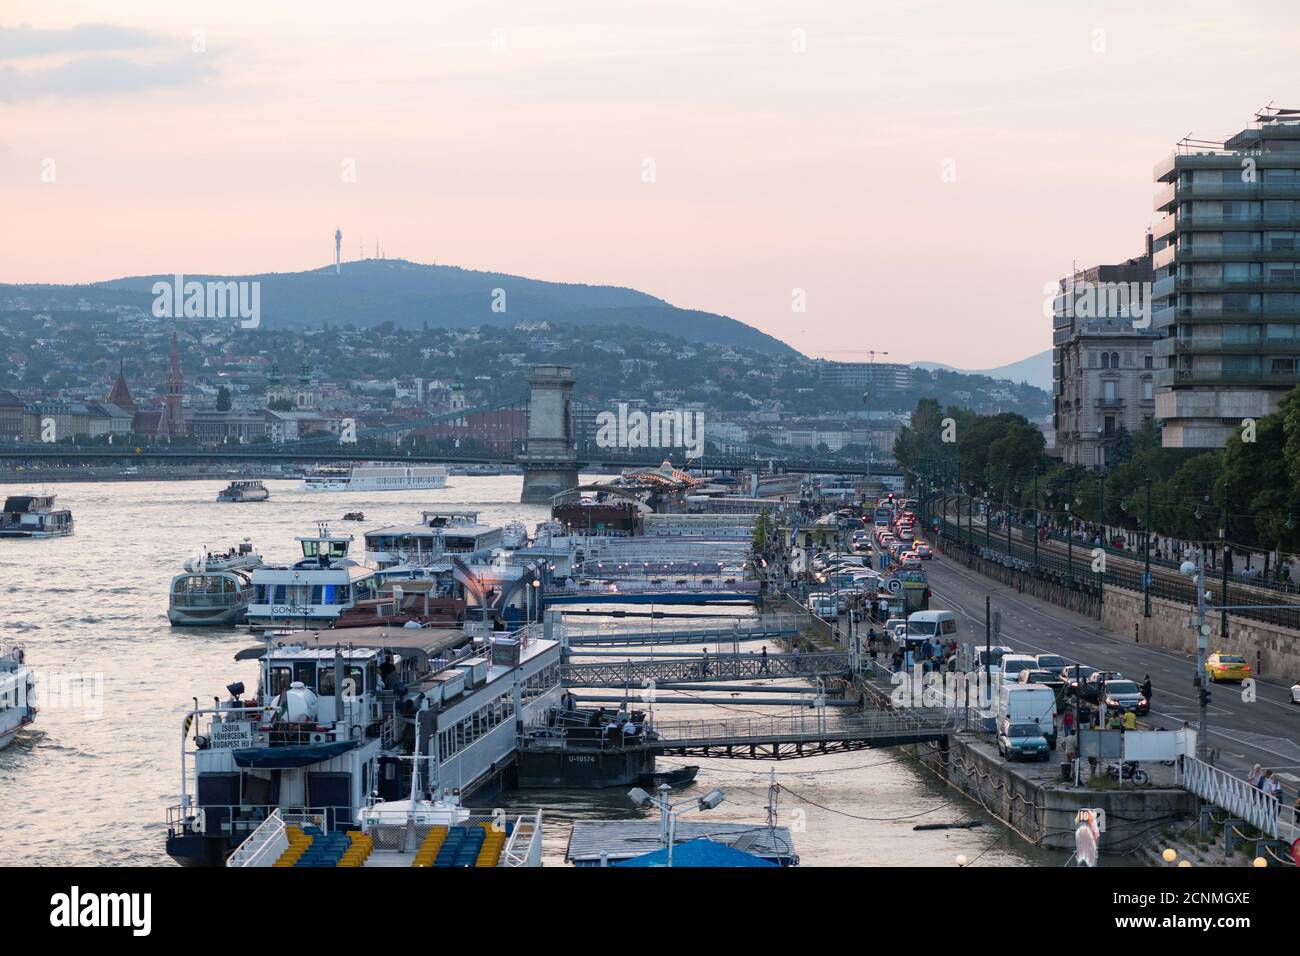 Jetties, Danube, river cruises, Budapest, Hungary, Stock Photo